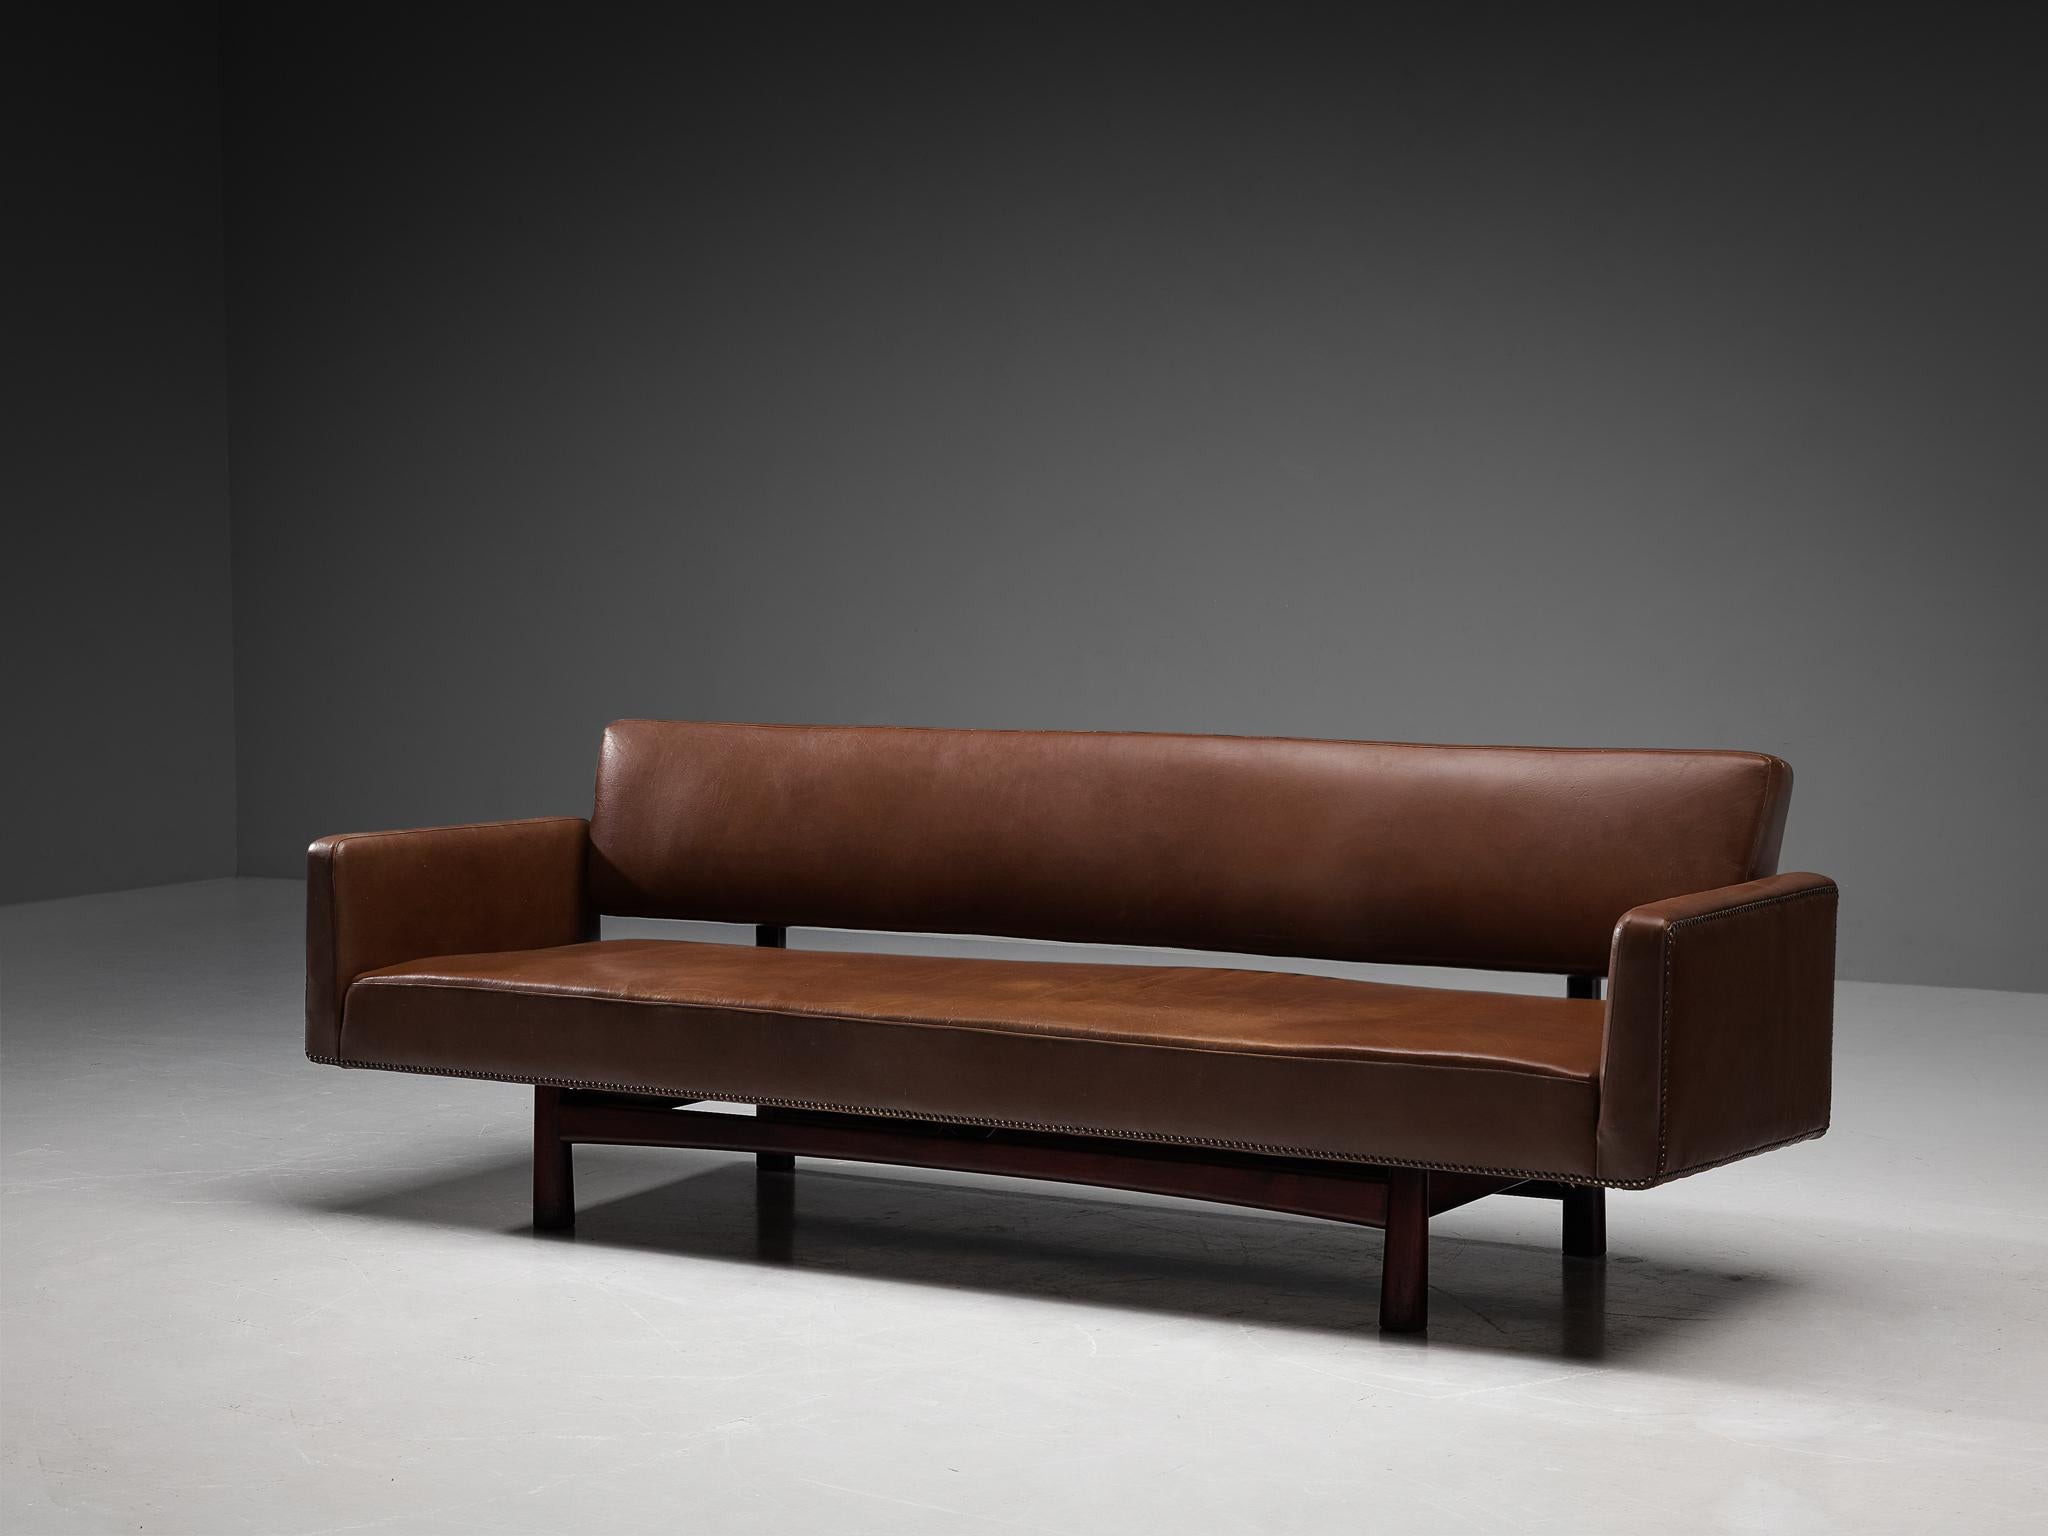 Edward Wormley für Dunbar Furniture / DUX of Sweden, Sofa Modell 5316, Kunstleder, Metall, Holz, Vereinigte Staaten, Entwurf 1952

Dieses dreisitzige Sofa wurde 1952 von Edward Wormley für Dunbar entworfen. Das auffällige Kunstleder mit